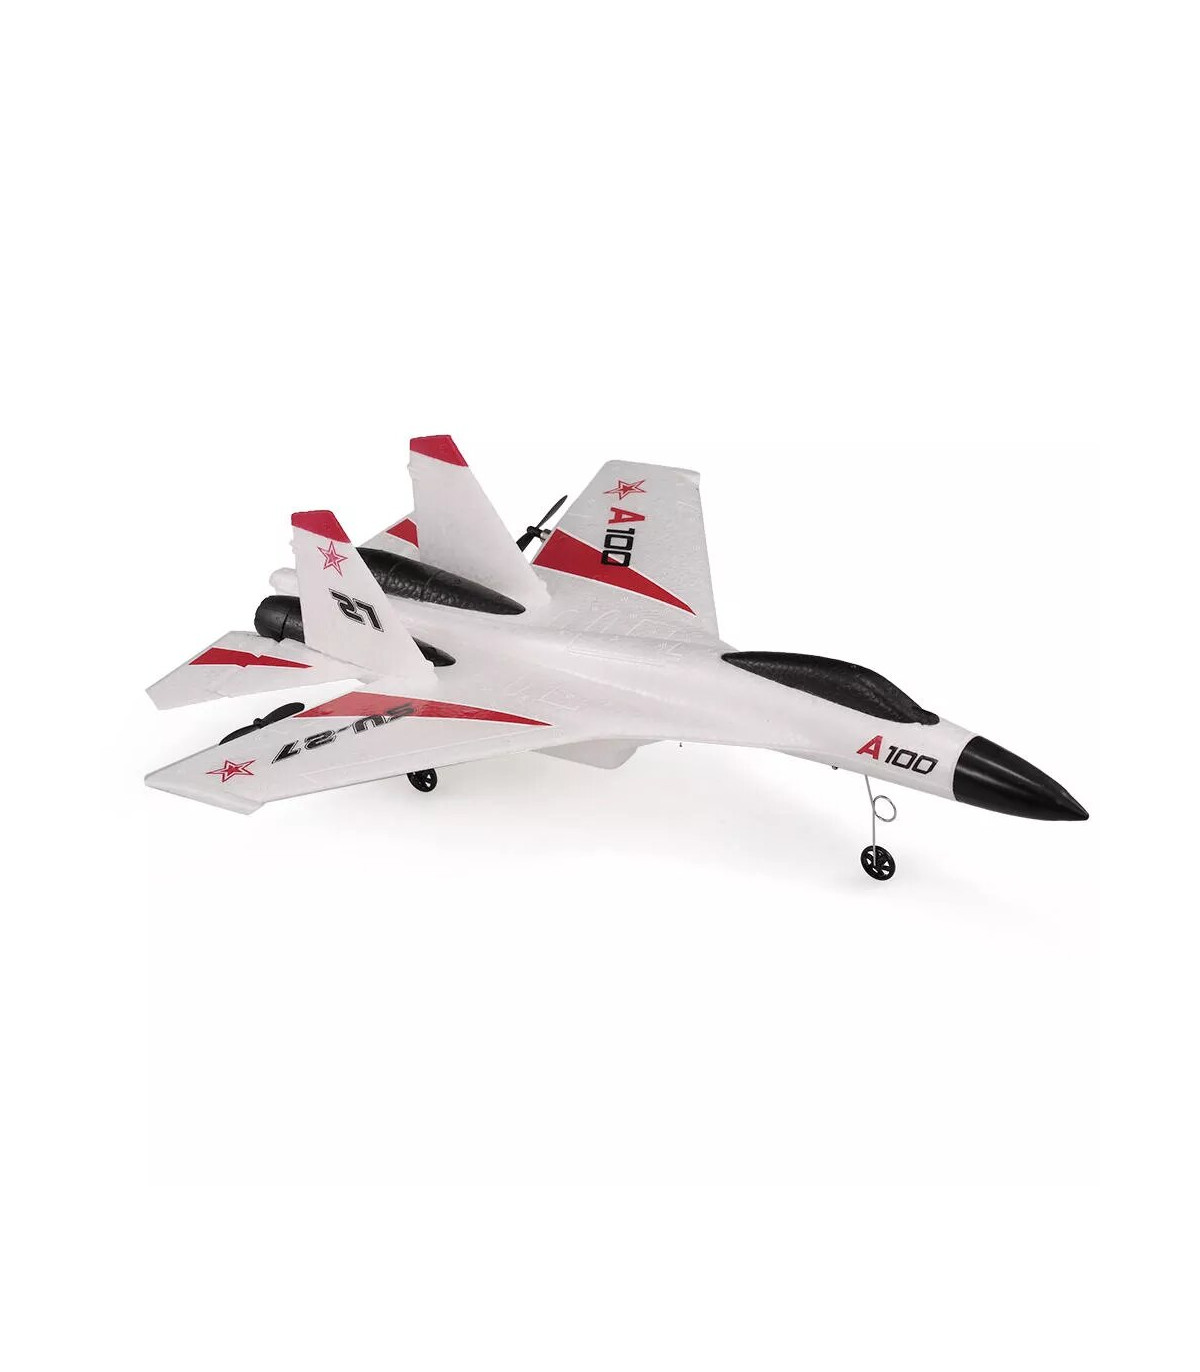 XK-A100 】el nuevo caza RC completo y fácil de volar al mejor